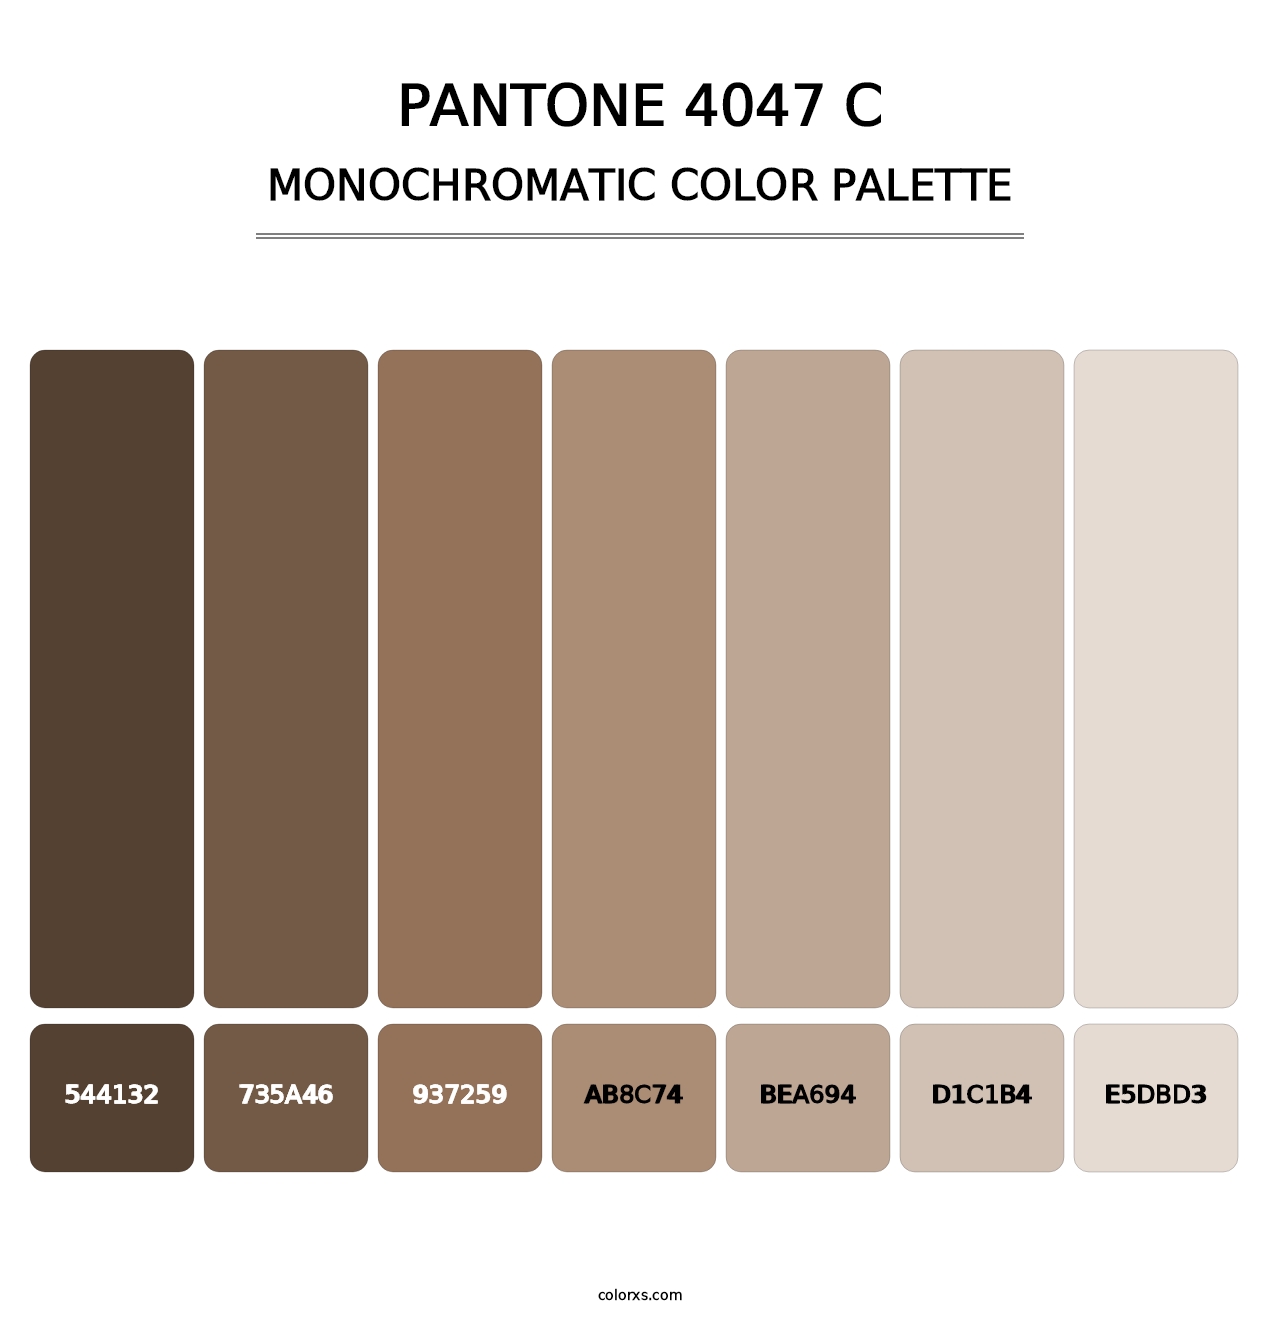 PANTONE 4047 C - Monochromatic Color Palette